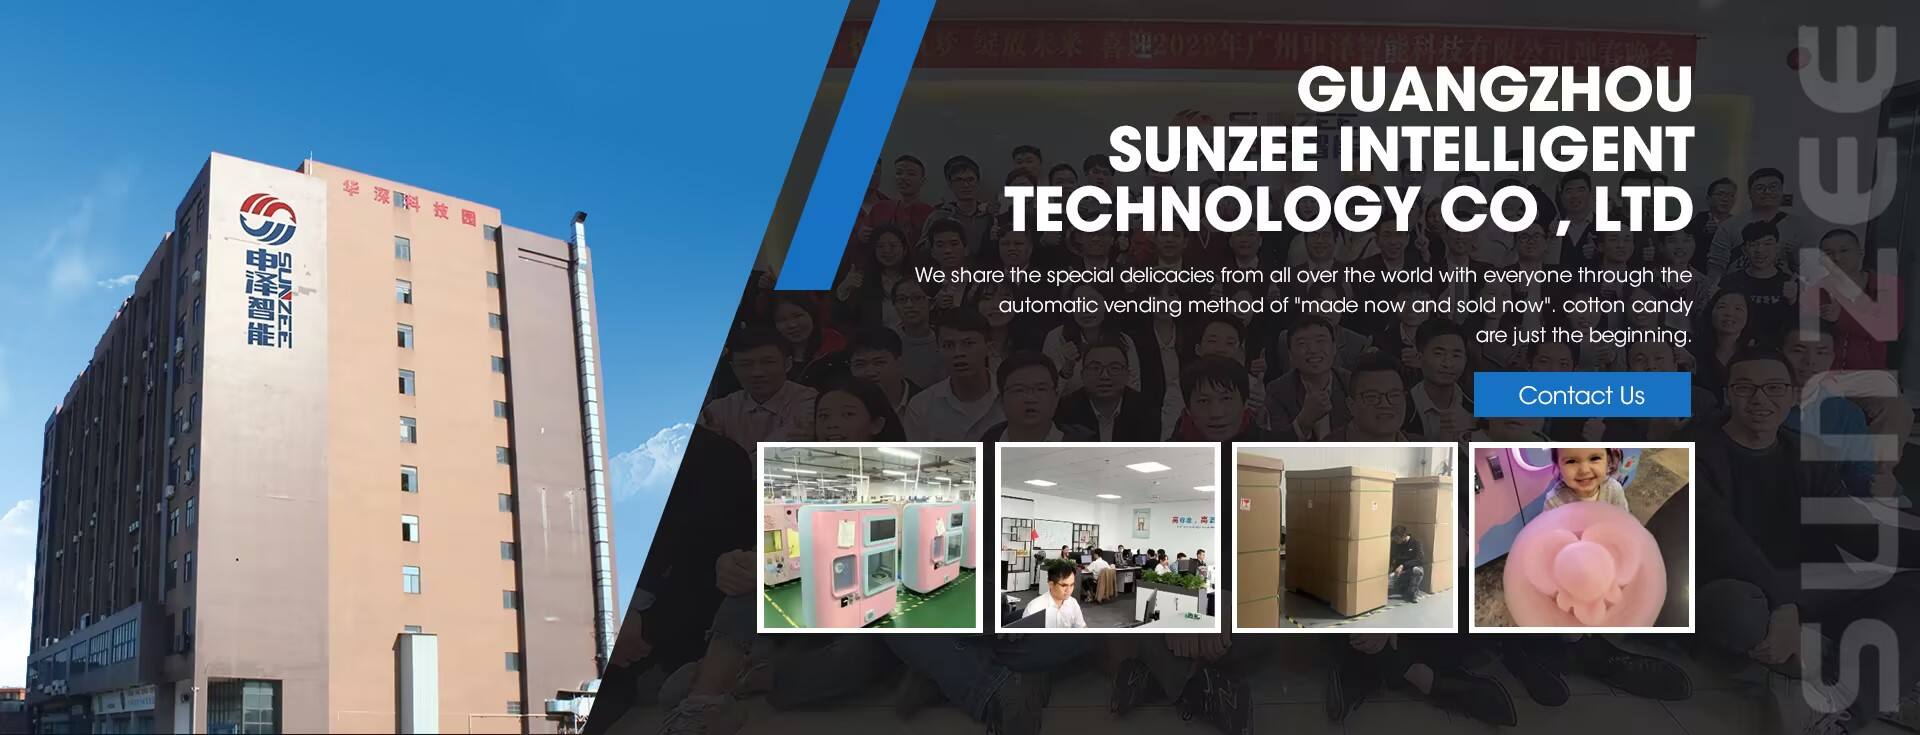 Guangzhou Sunzee Cerdas Technology Co, Ltd.